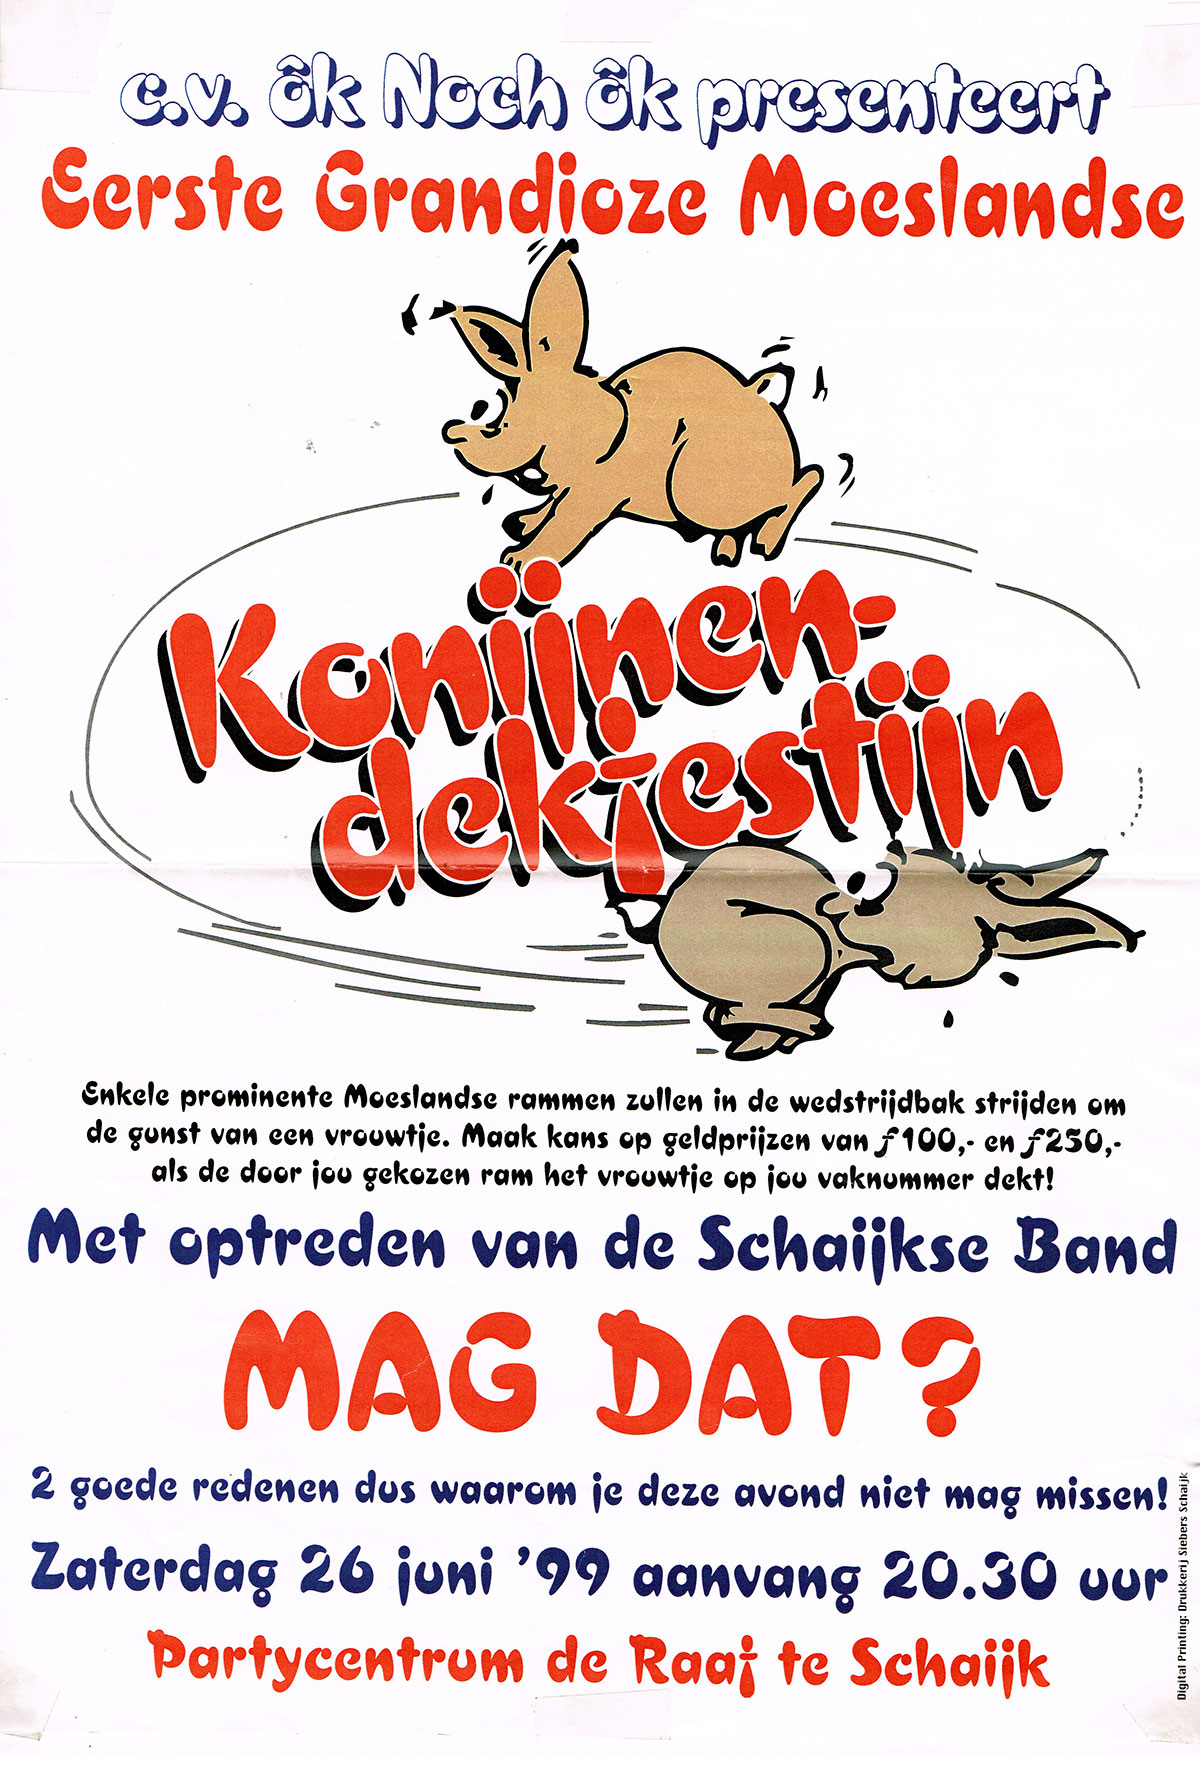 1999 konijnendekfestijn poster